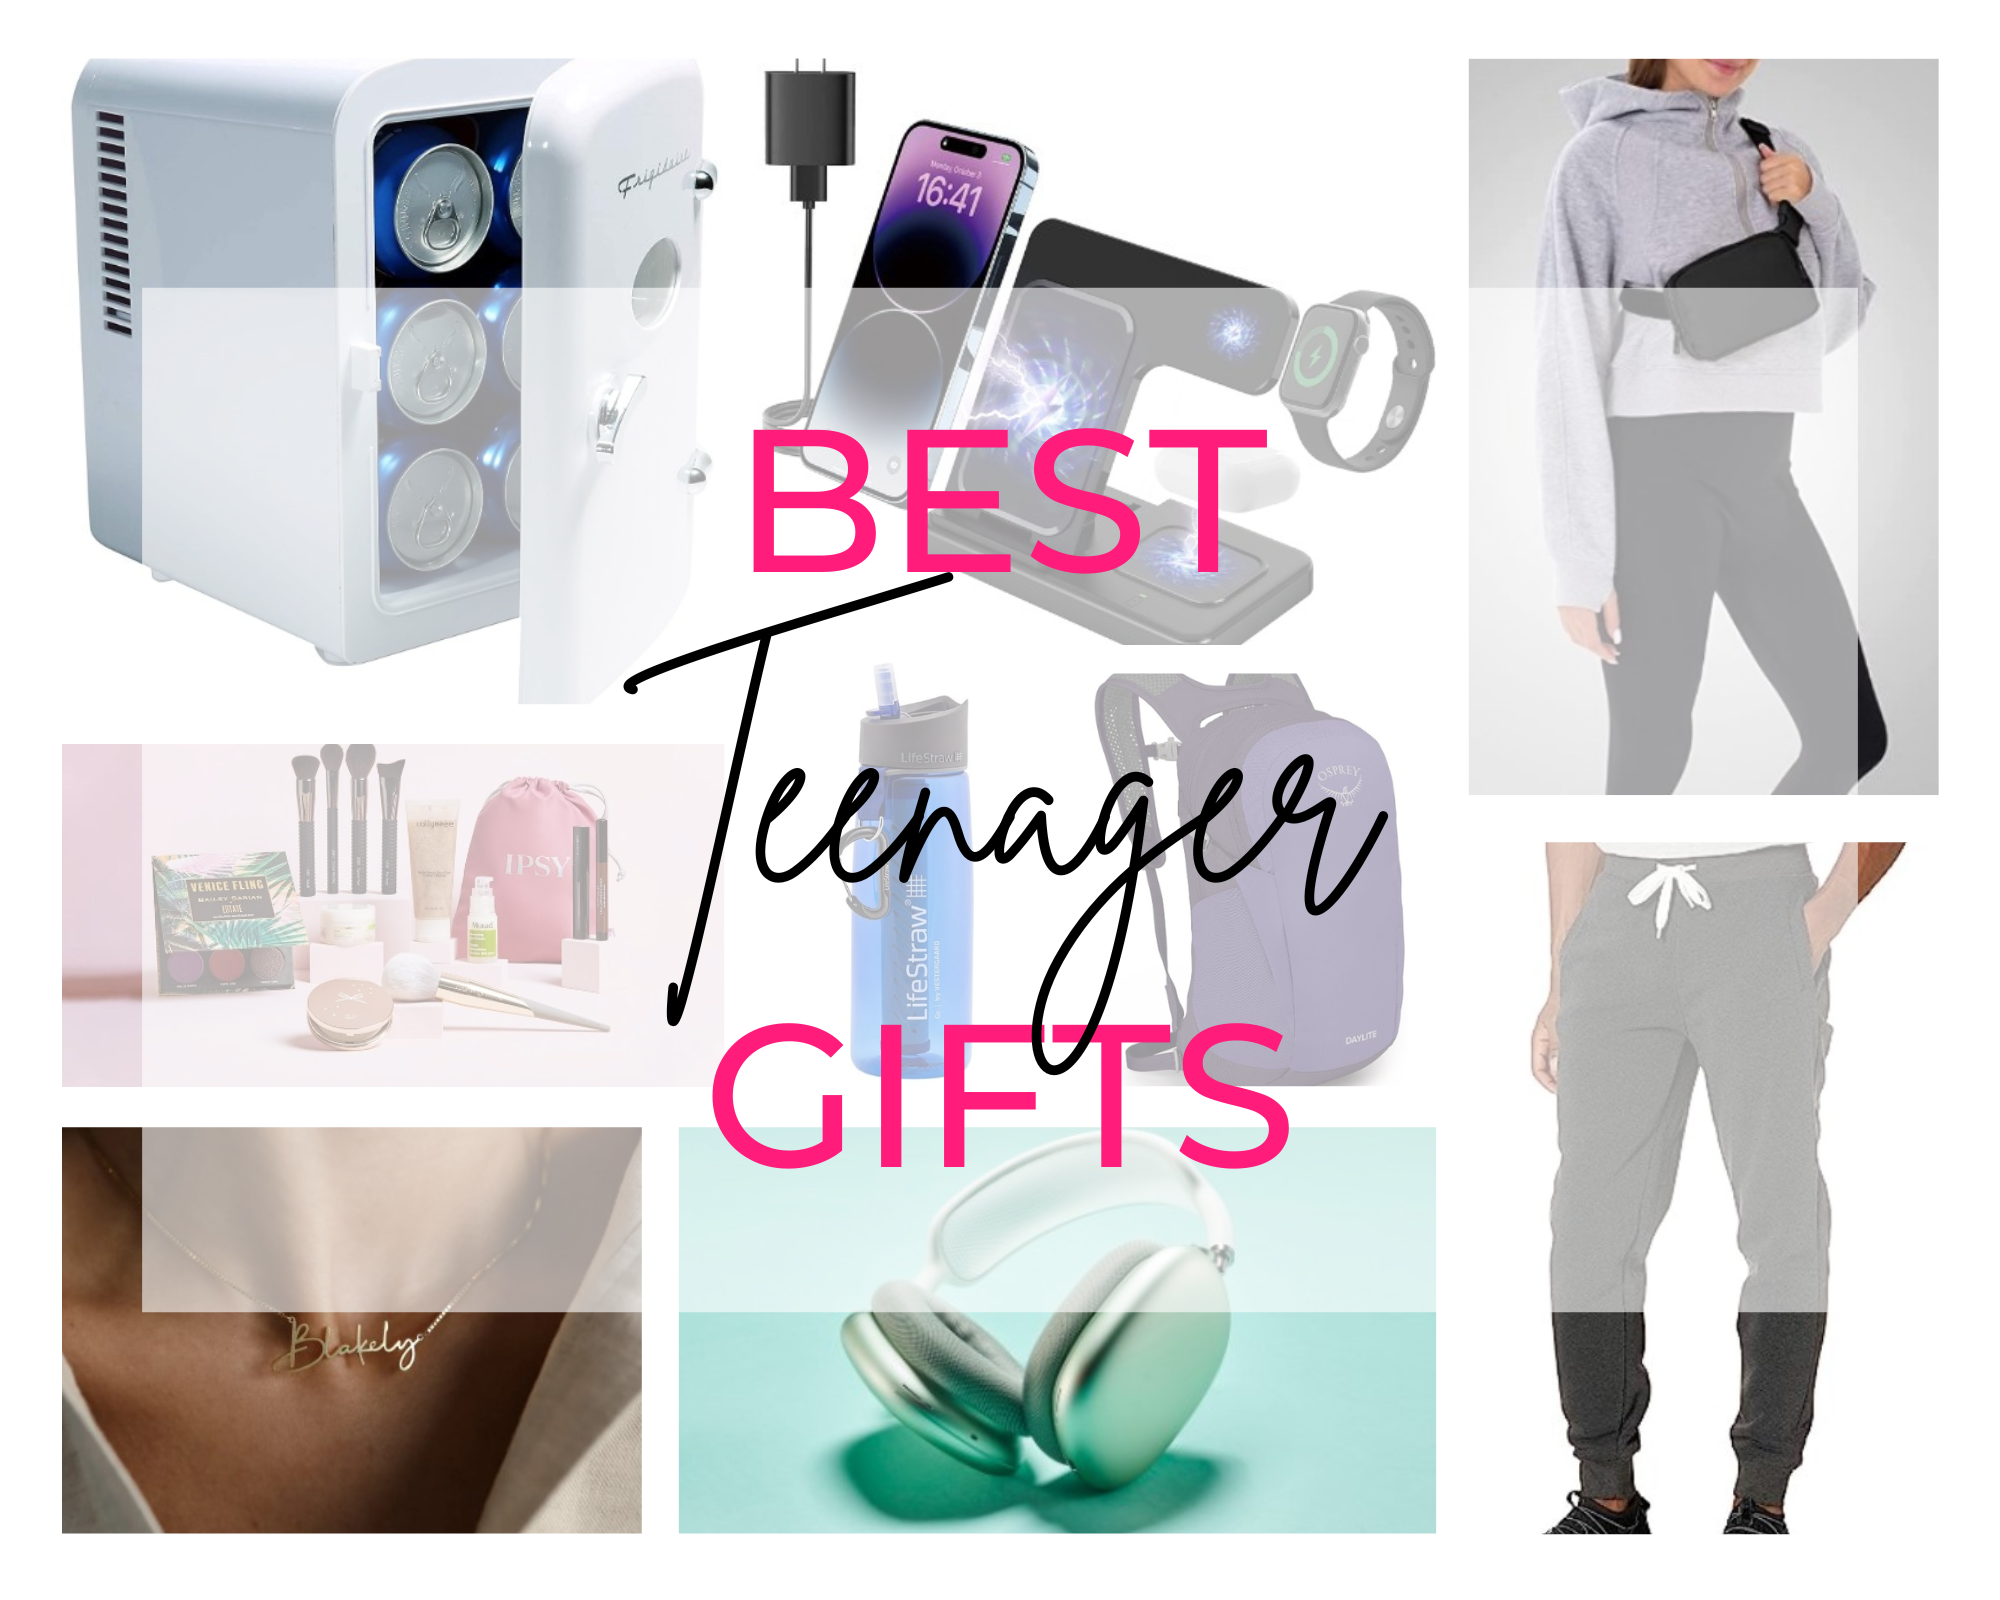 65 Gifts for Teen Girls 2024 - Cute Teen Girl Gift Ideas